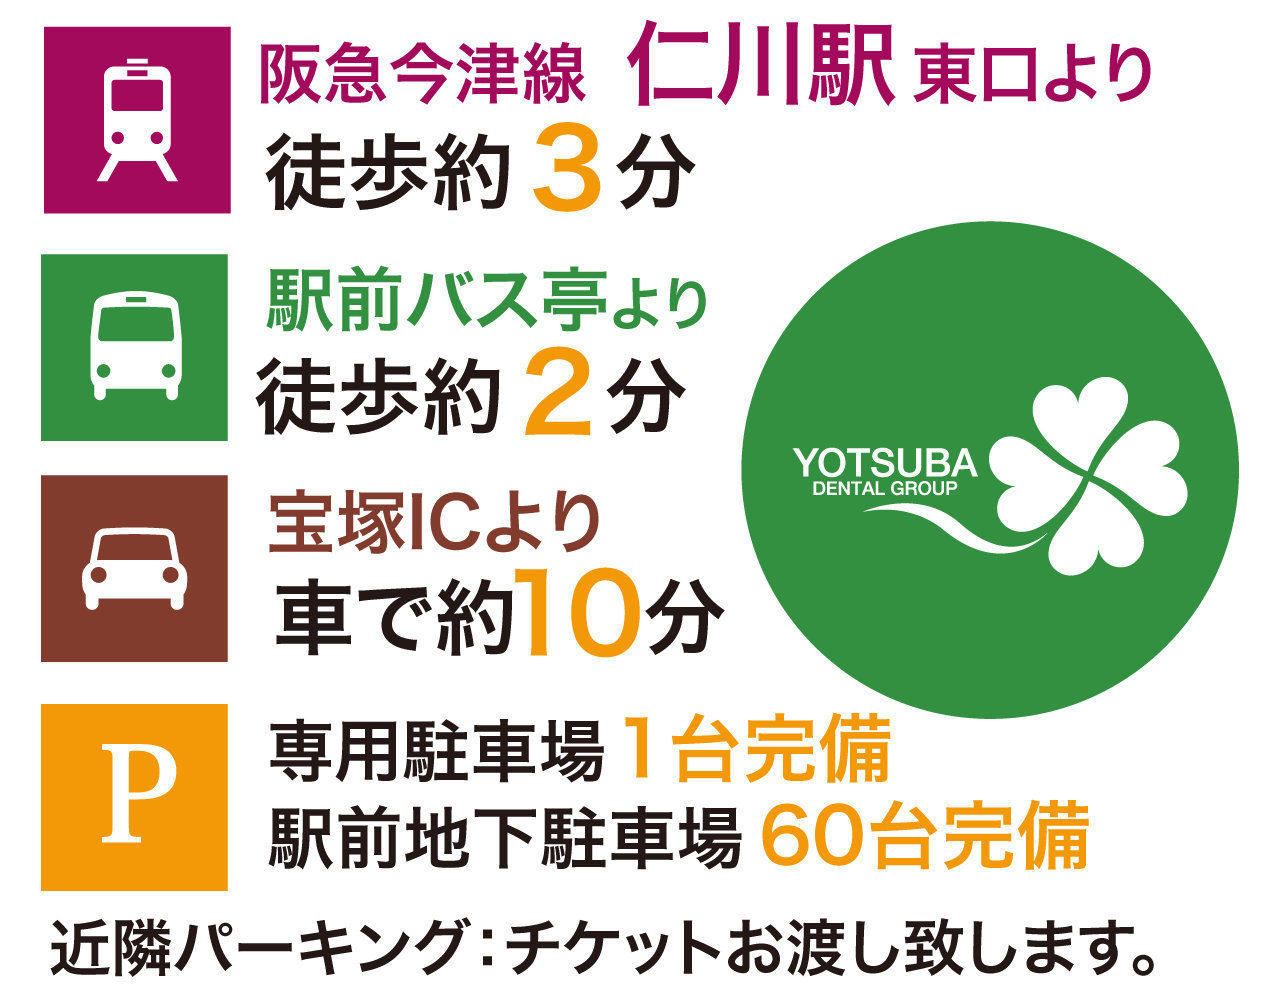 阪急仁川駅東口、駅前バス停、宝塚インターチェンジよりすぐ。専用駐車場、駅前地下駐車場完備。